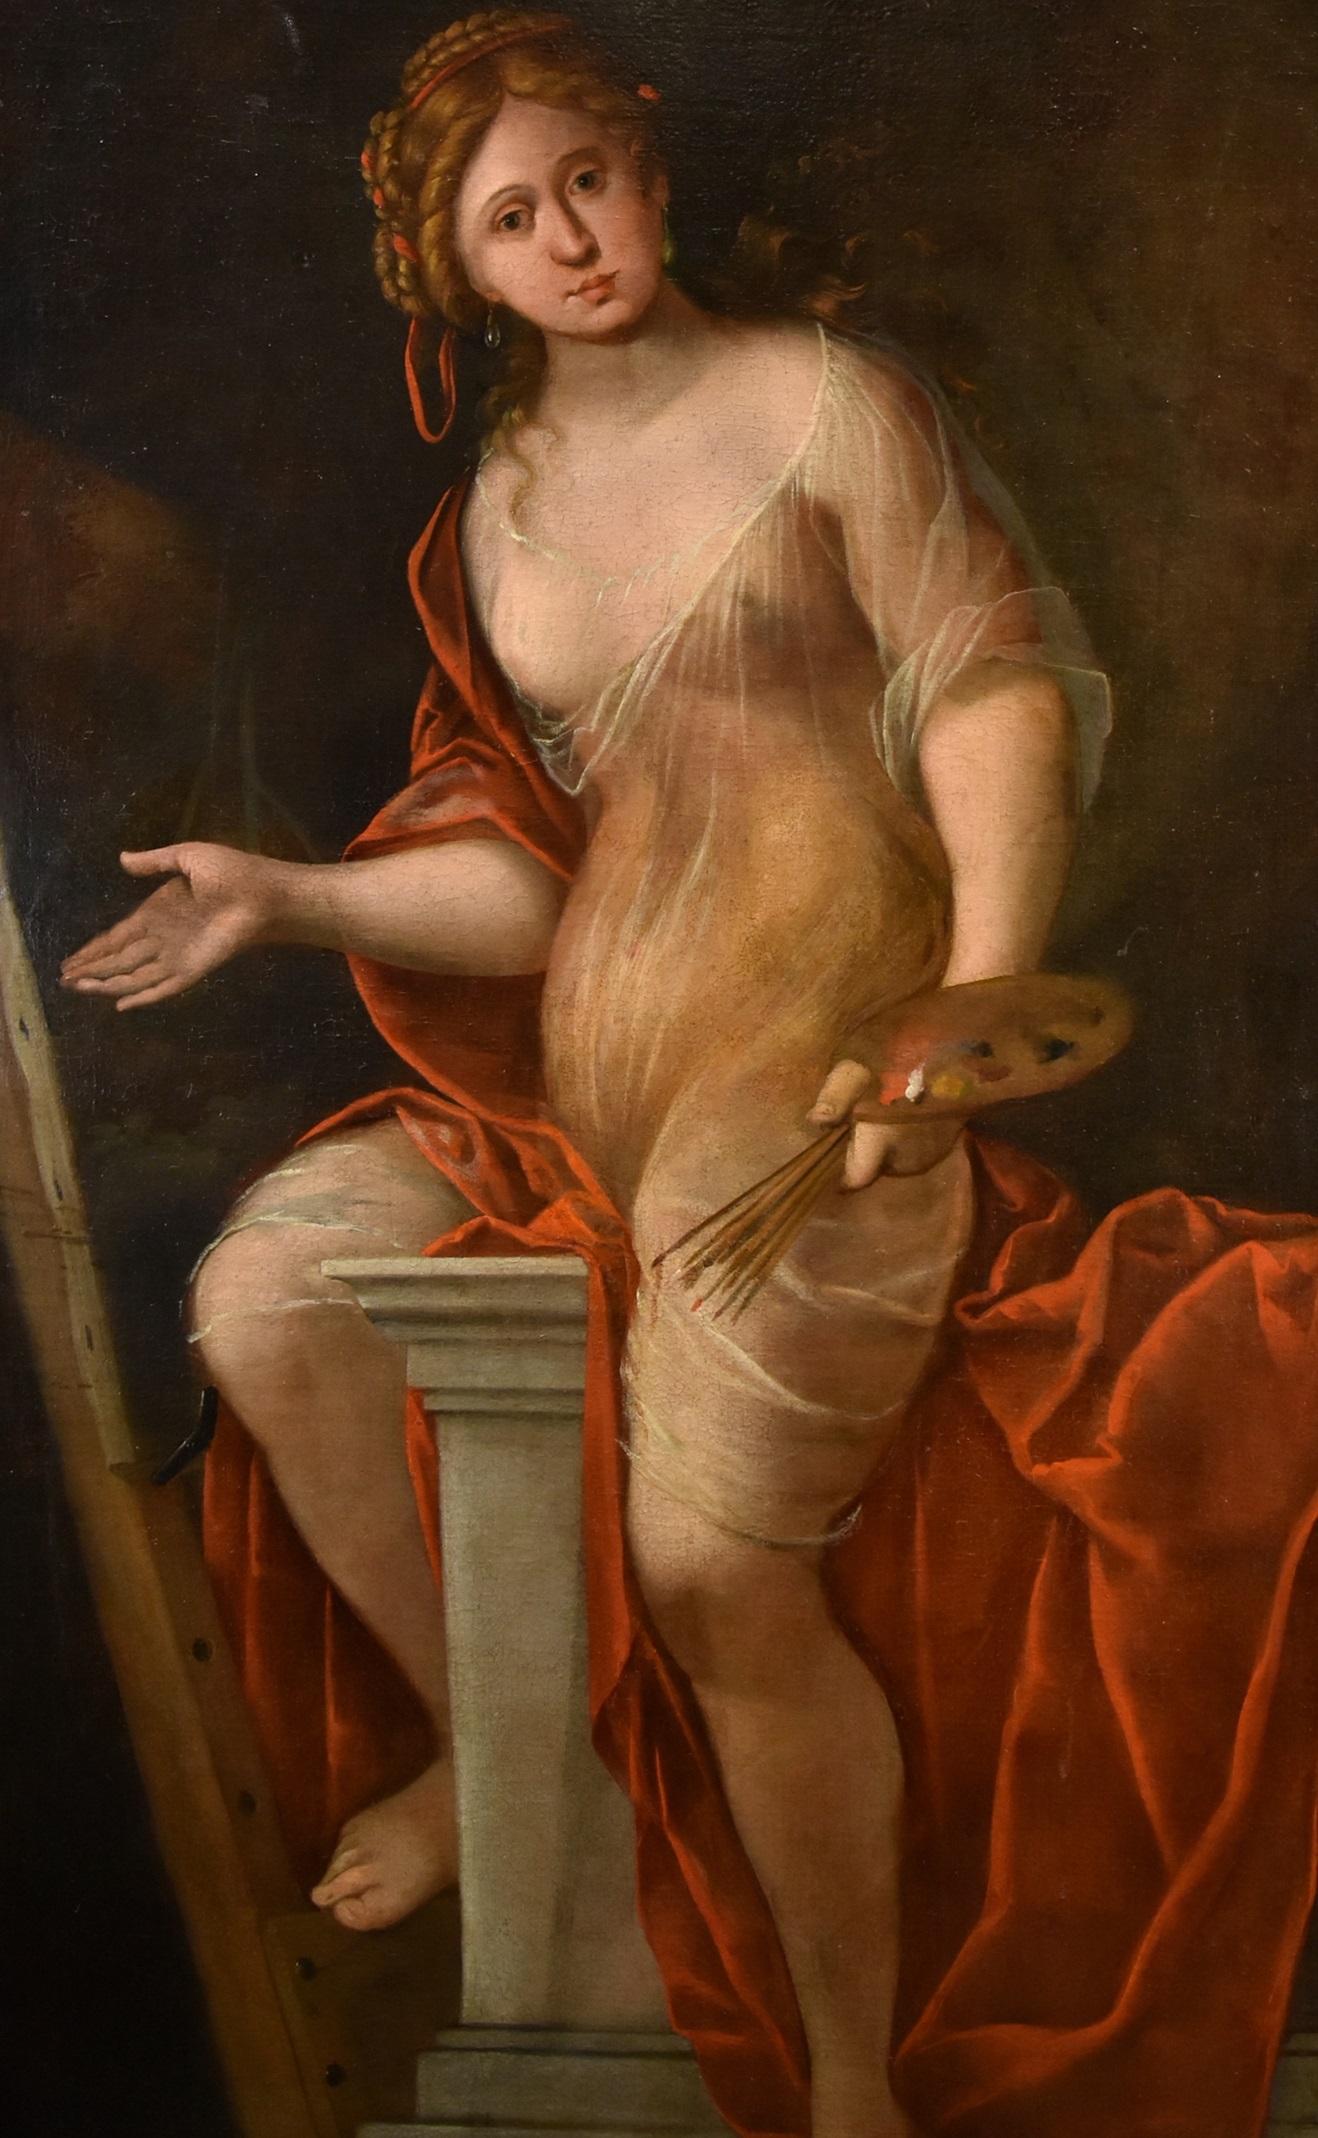 Mattheus Terwesten (Den Haag, 1670 - 1757)
Porträt einer jungen Frau mit Palette und Pinsel, als Allegorie auf die Kunst des Malens

Öl auf Leinwand
160 x 91 cm. - Im Rahmen 178 x 107 cm.

Dieses prächtige und eindrucksvolle Gemälde zeigt uns eine